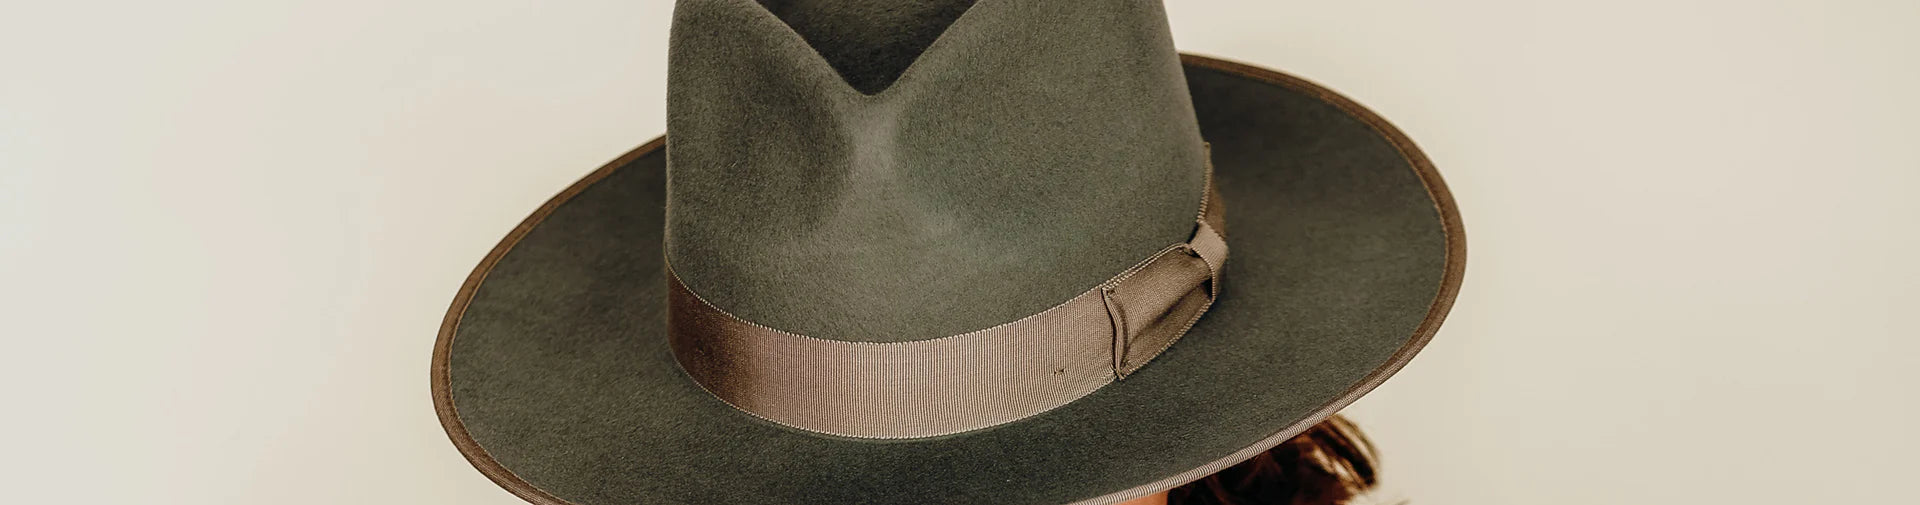 Snakeskin Band Brown Felt Hat – High Desert